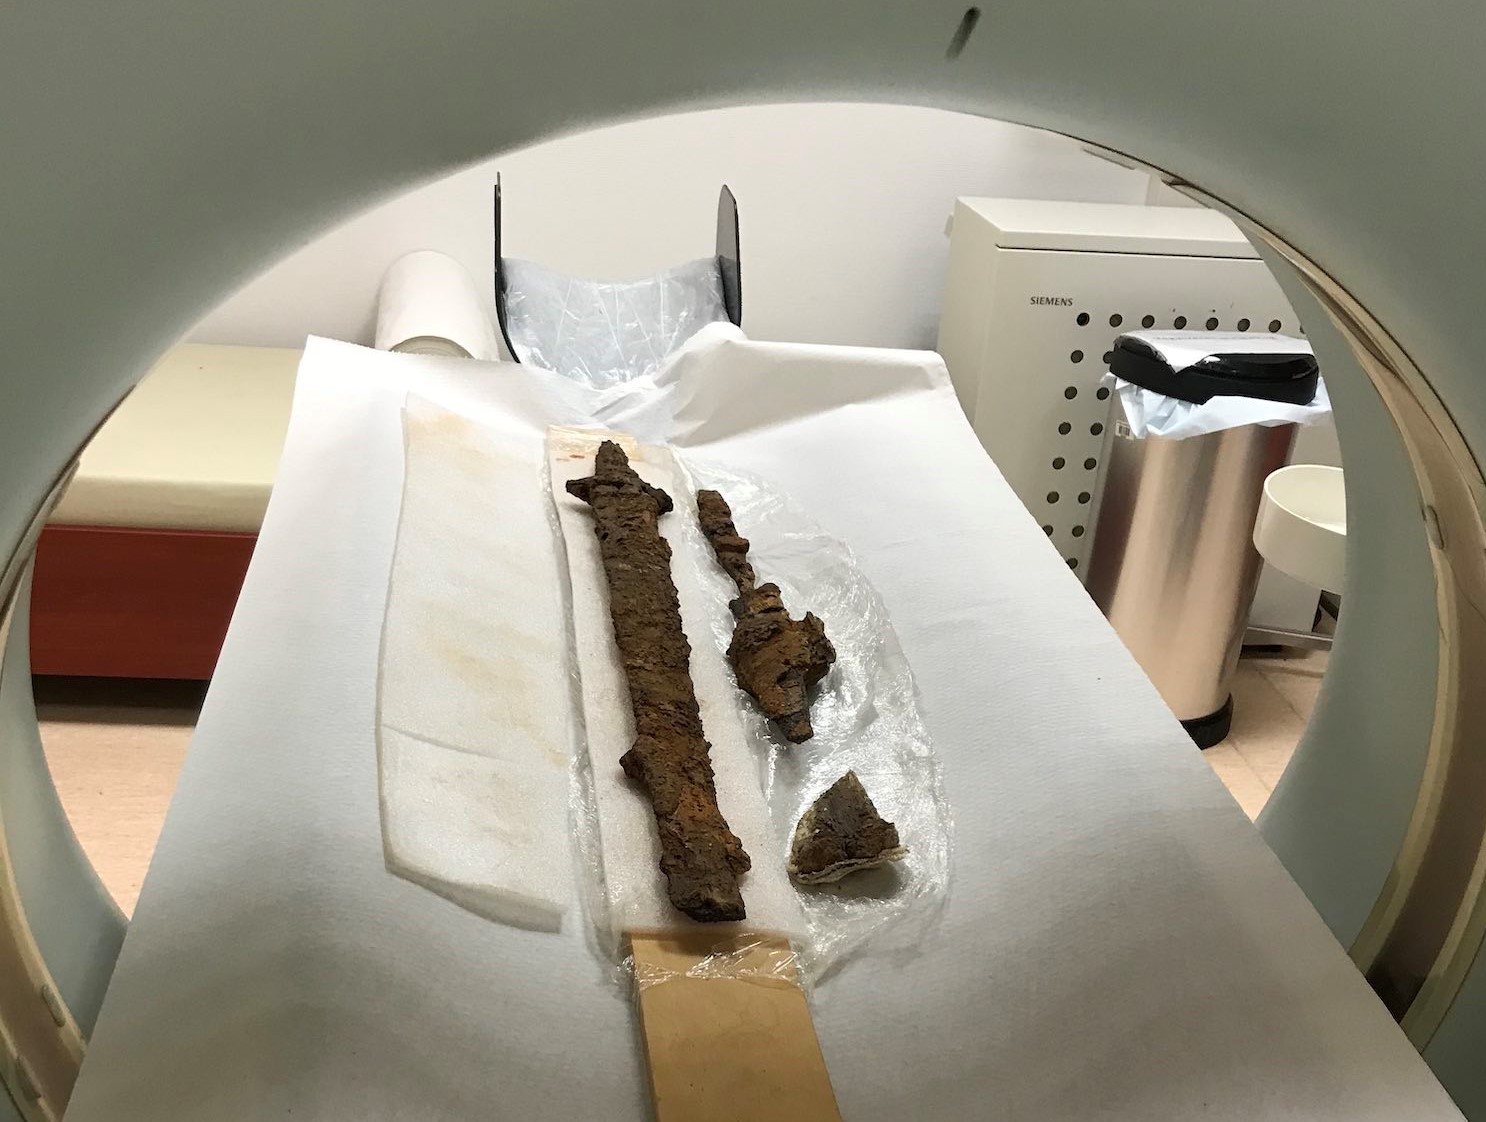 Így néz ki egy ősi hun kard a CT-ben - de miért került oda? | EgészségKalauz